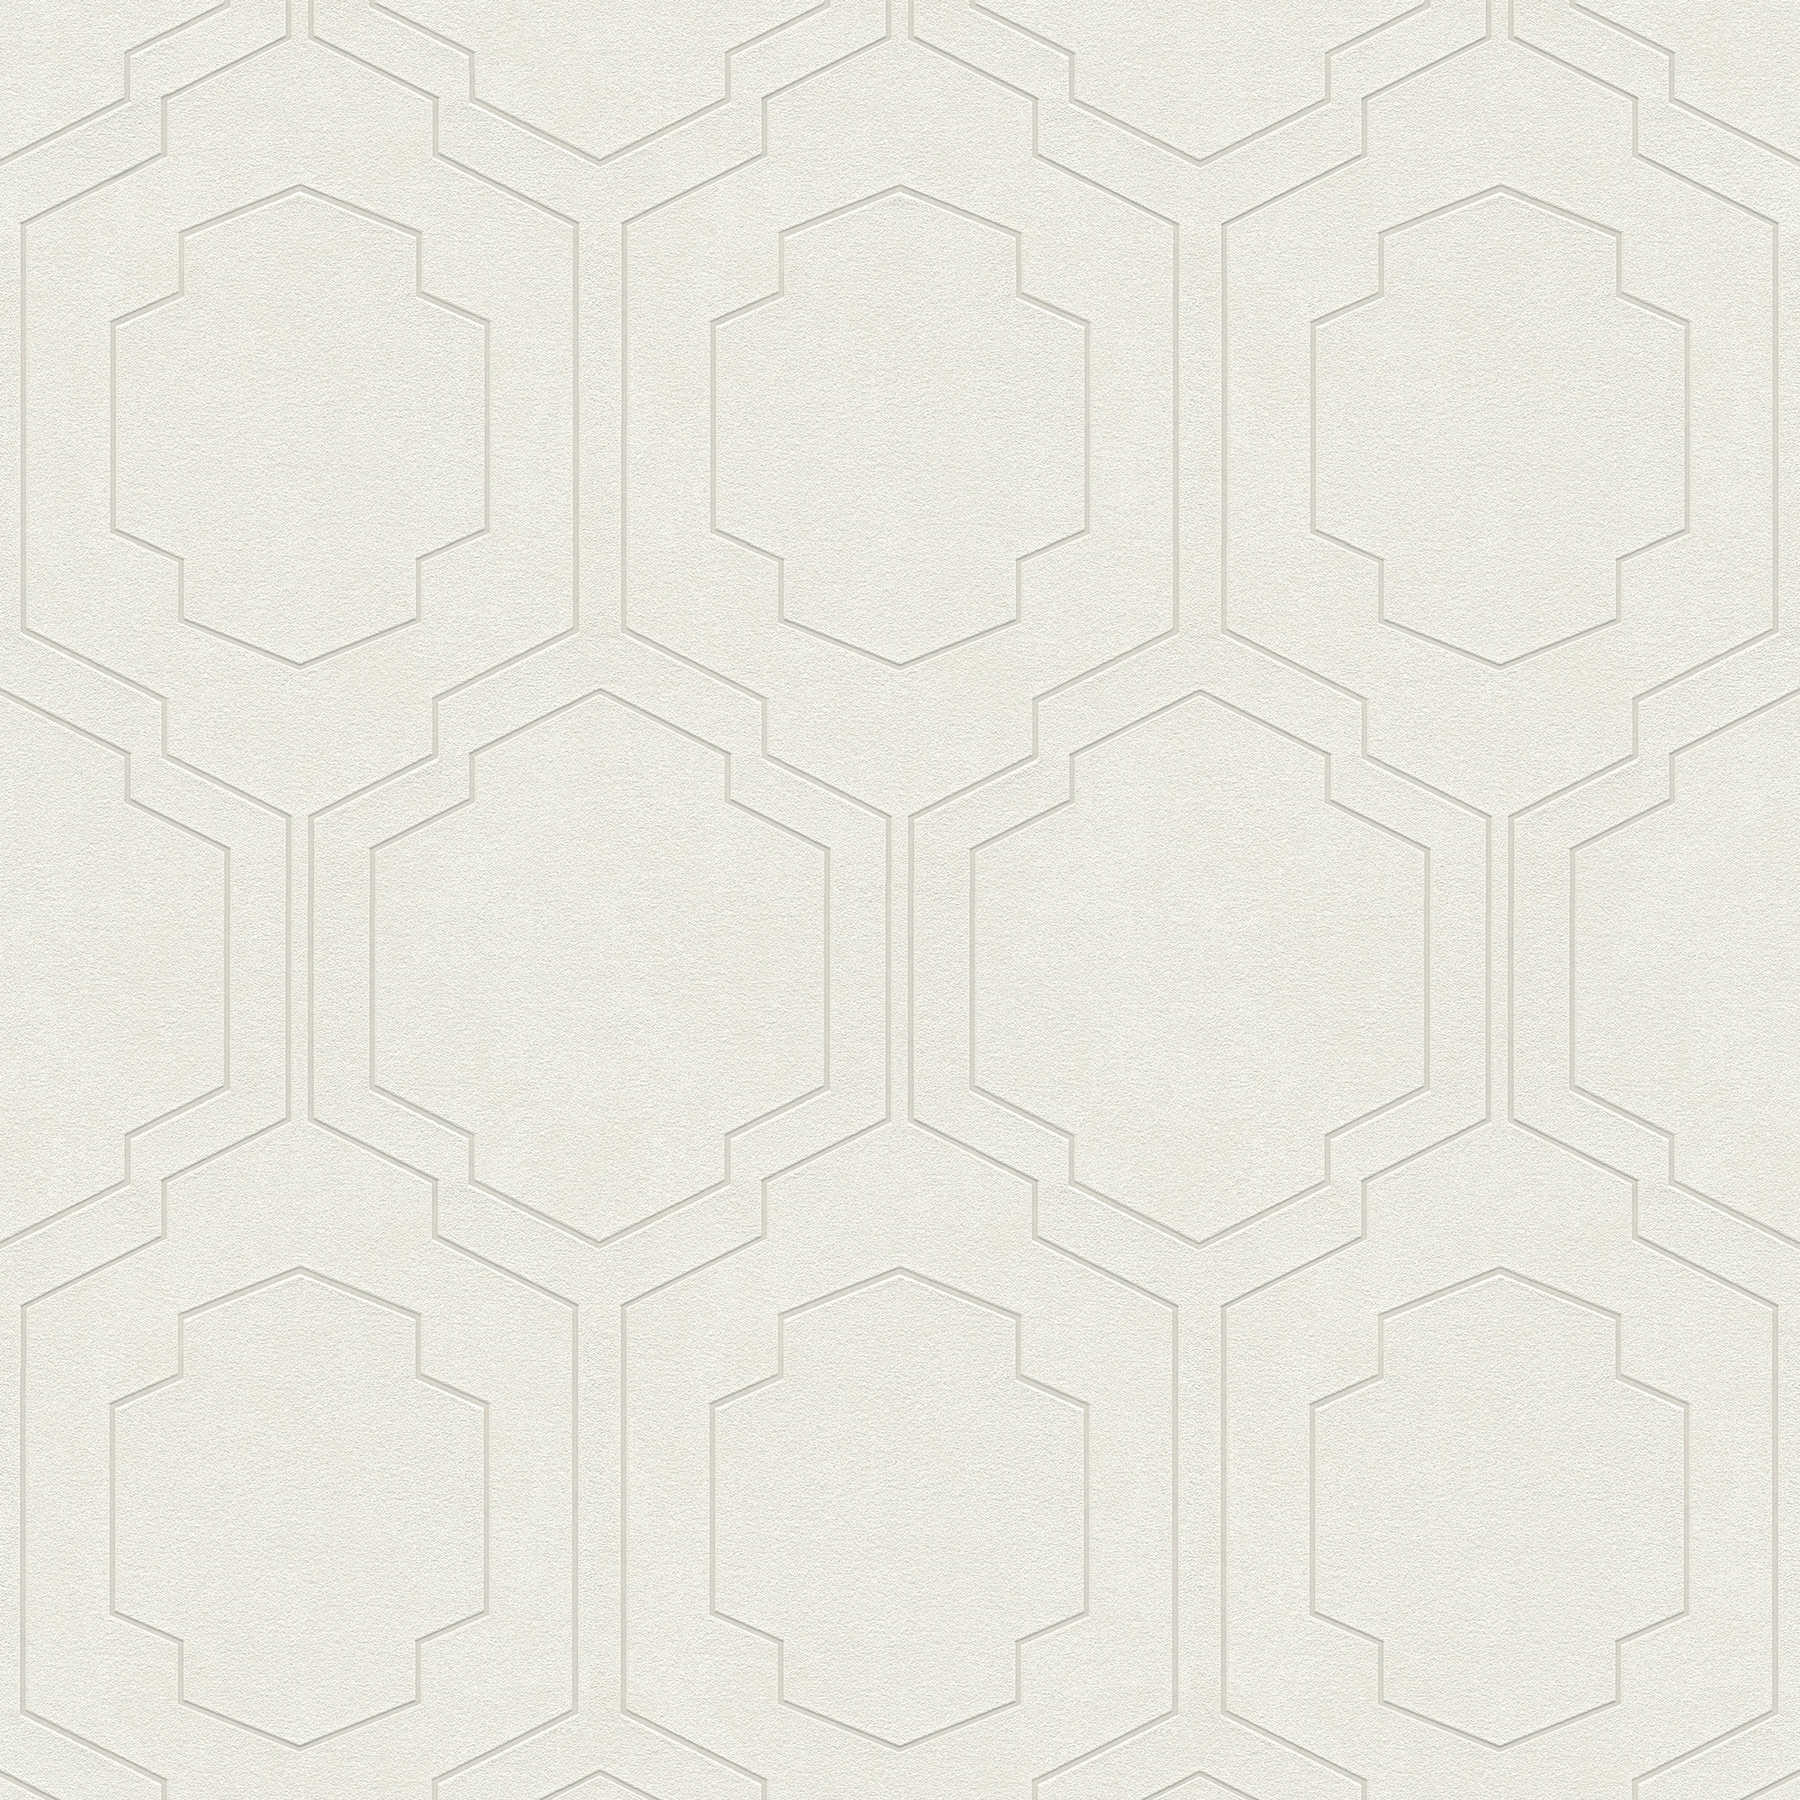         Tapete Retro-Look mit symmetrischem Muster – Creme, Metallic, Beige
    